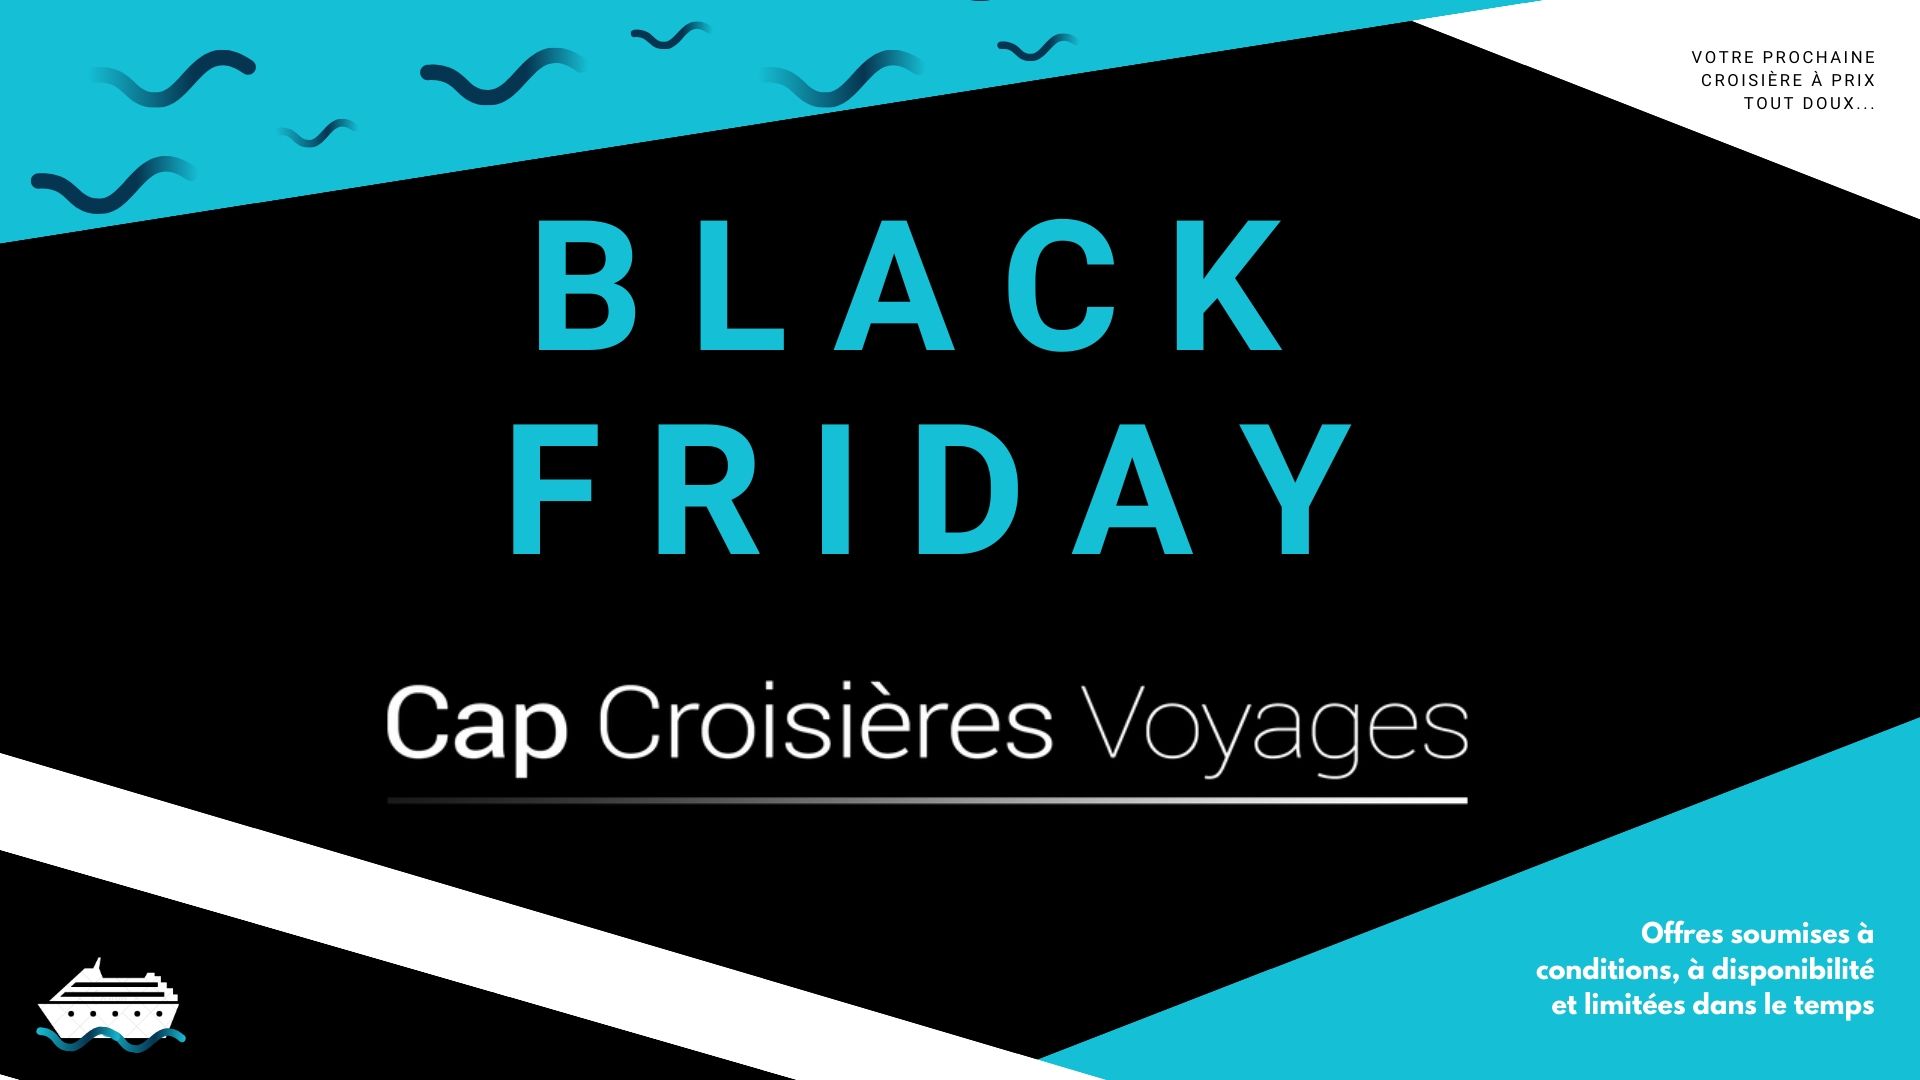 Affiche promotionnelle du Black Friday au sein de l'agence de voyages Cap Croisières Voyages